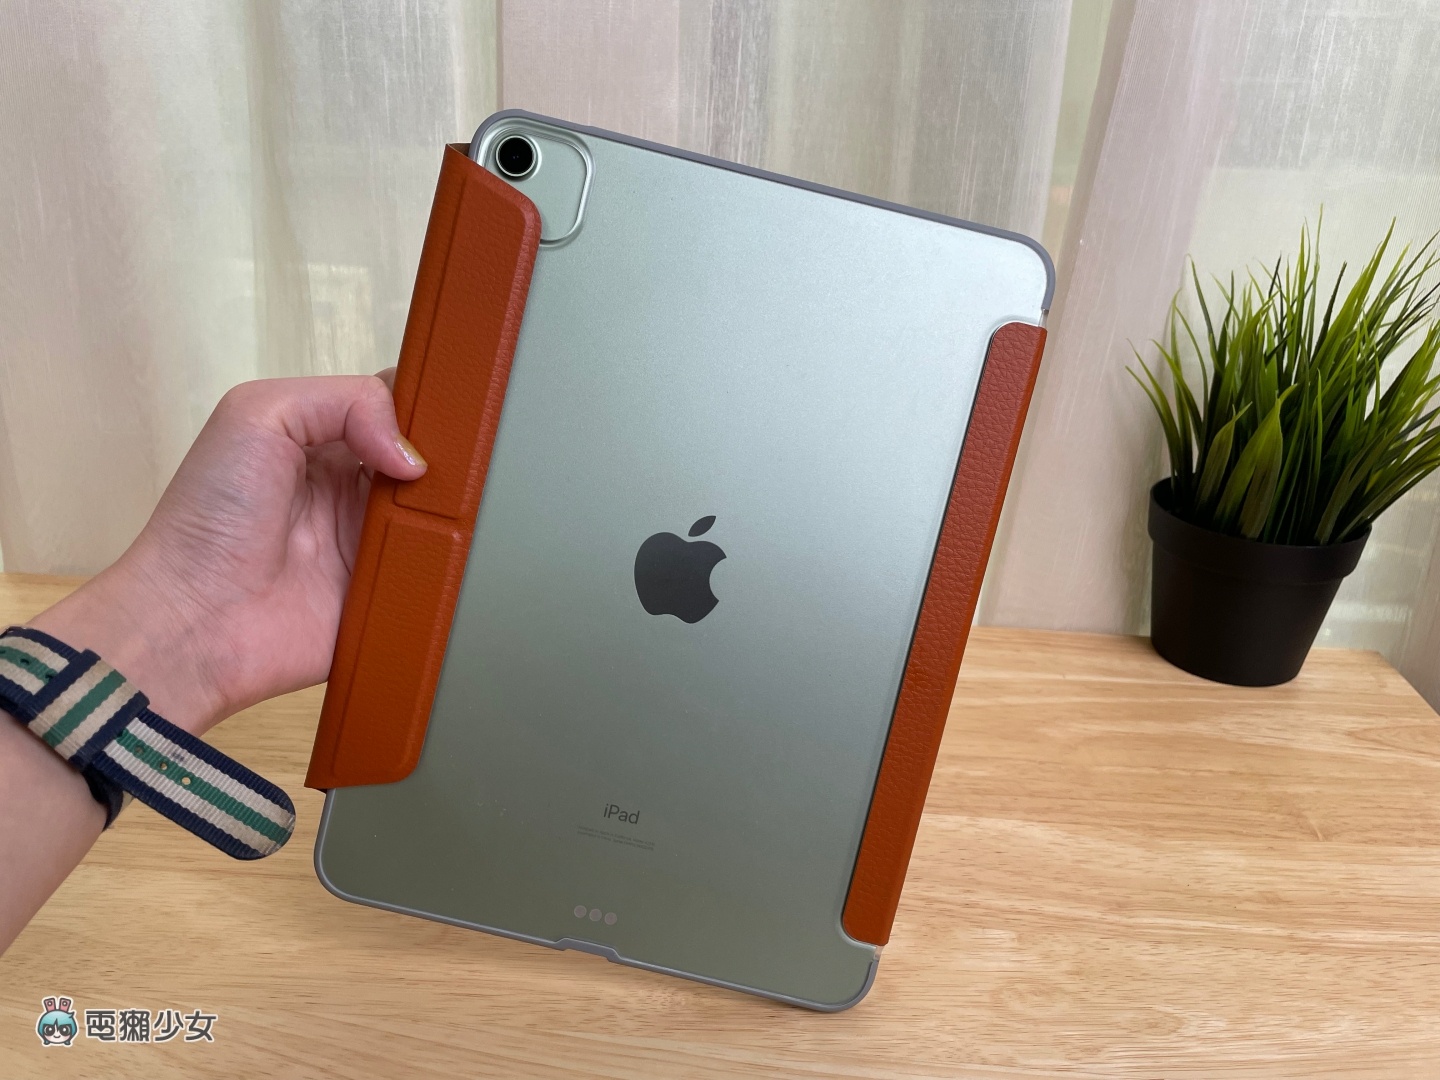 熱門 iPad 保護殼介紹！高 CP 值與高價款式各有優勢，告訴你最適合哪一款保護殼！